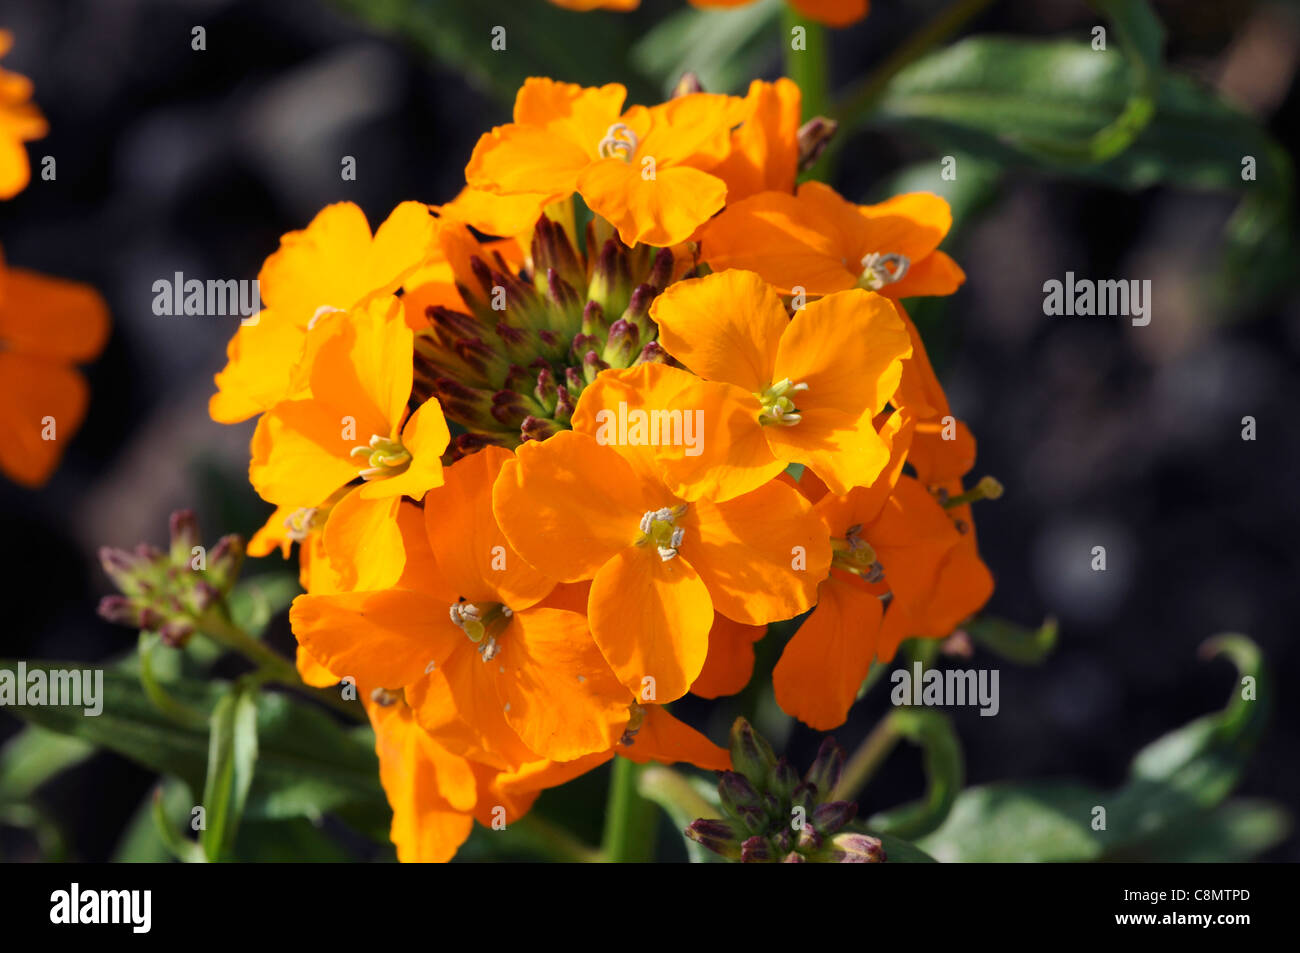 Cheiranthus x allionii alhelí primavera closeup enfoque selectivo pétalos de flores de color naranja brillante retratos de planta perenne Foto de stock